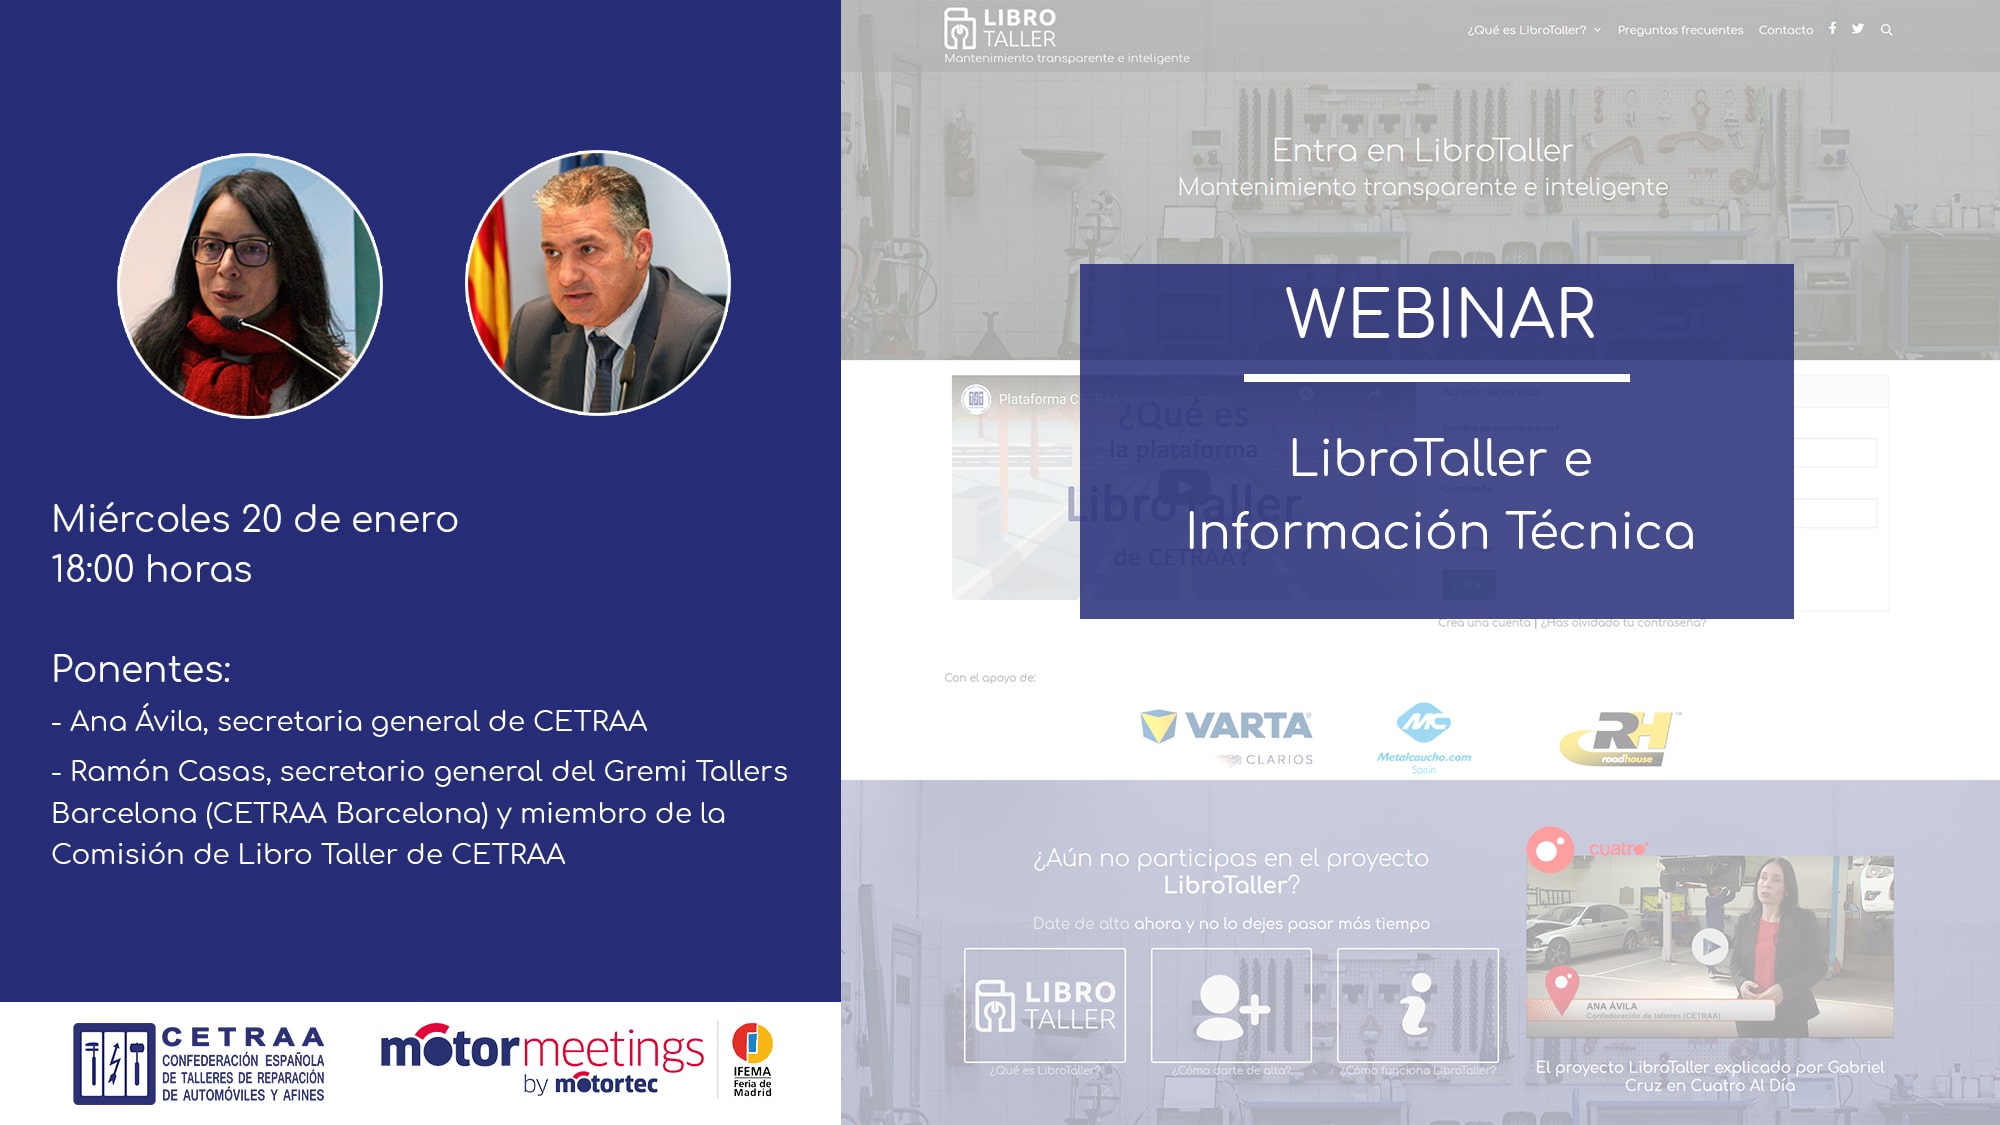 Webinar “LibroTaller e Información Técnica”